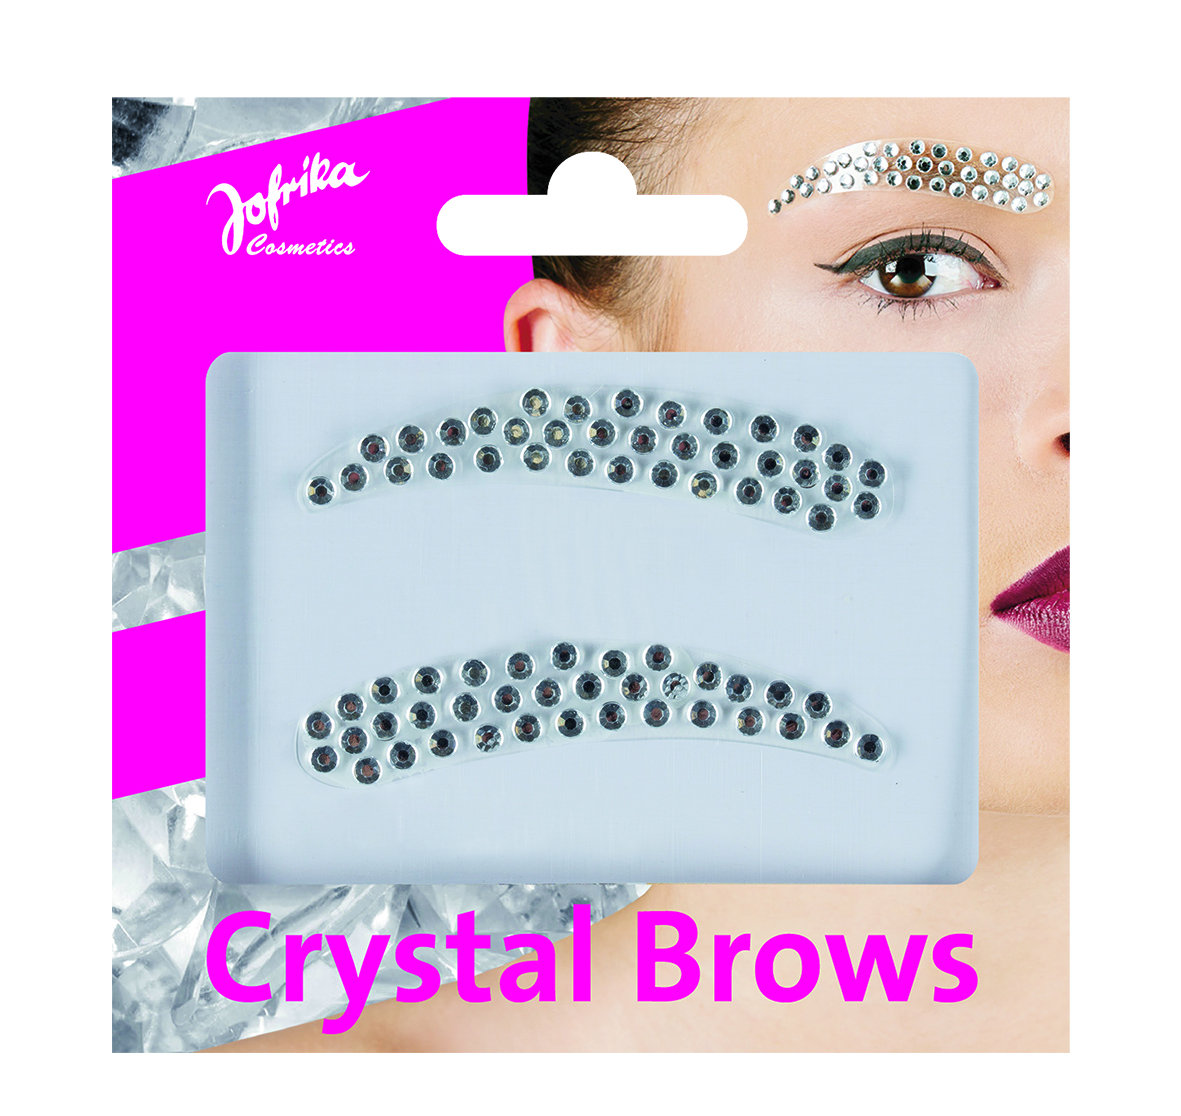 Jofrika Cosmetics 750710 - Crystal Brows, Künstliche Augebrauen aus Schmucksteinen